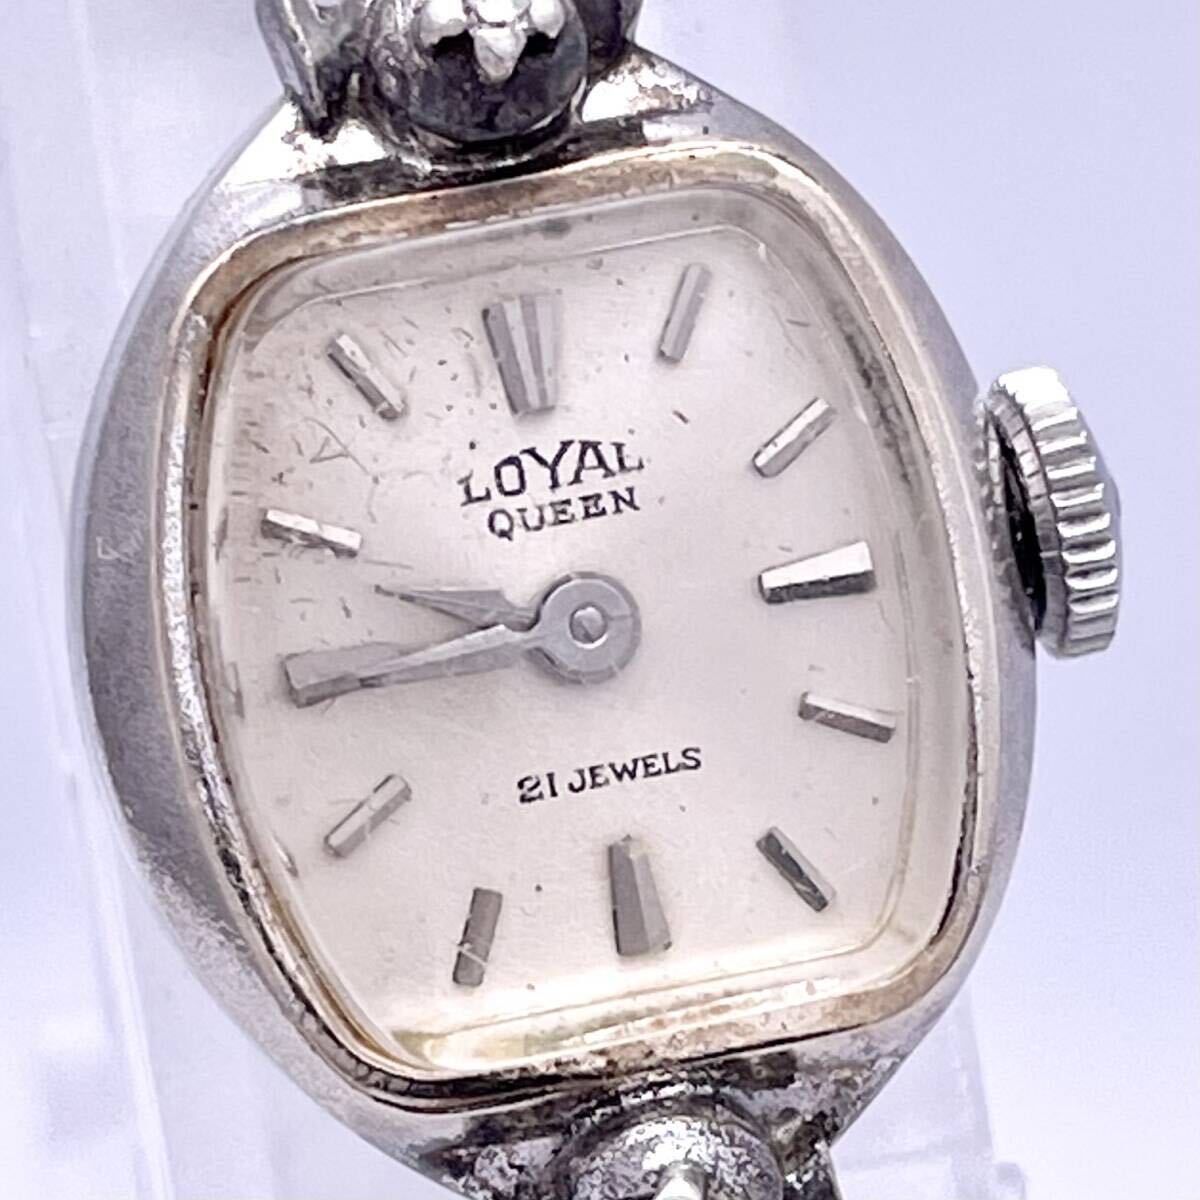 LOYAL QUEEN Royal Queen наручные часы часы механический завод автоматический 21 JEWELS 21 камень серебряный серебряный P511